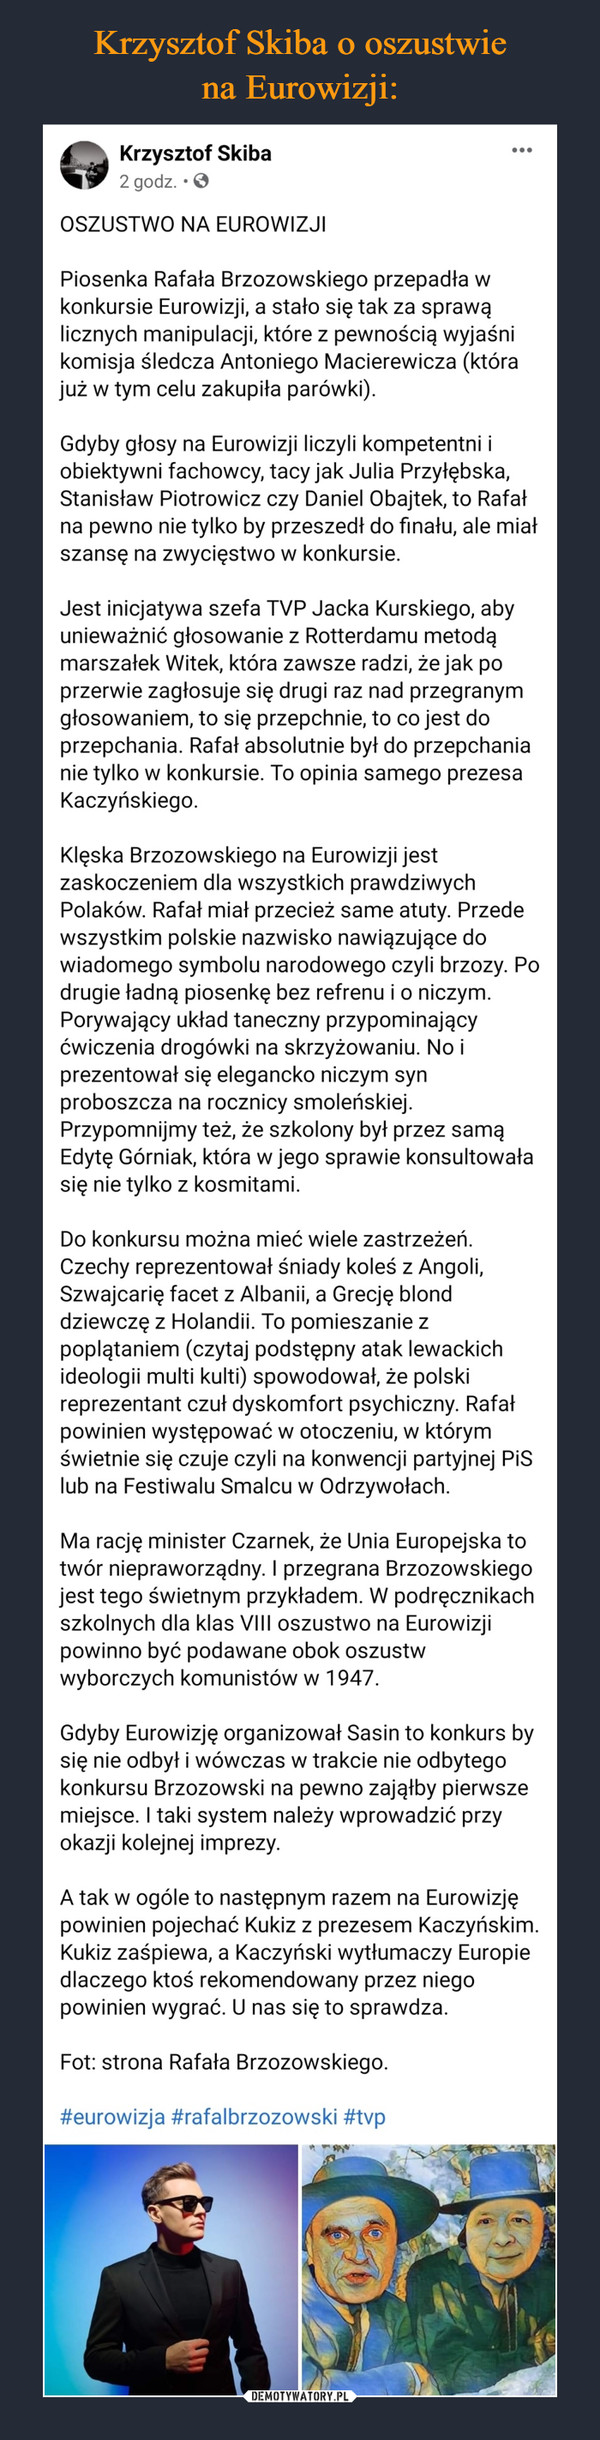 Krzysztof Skiba o oszustwie
na Eurowizji: